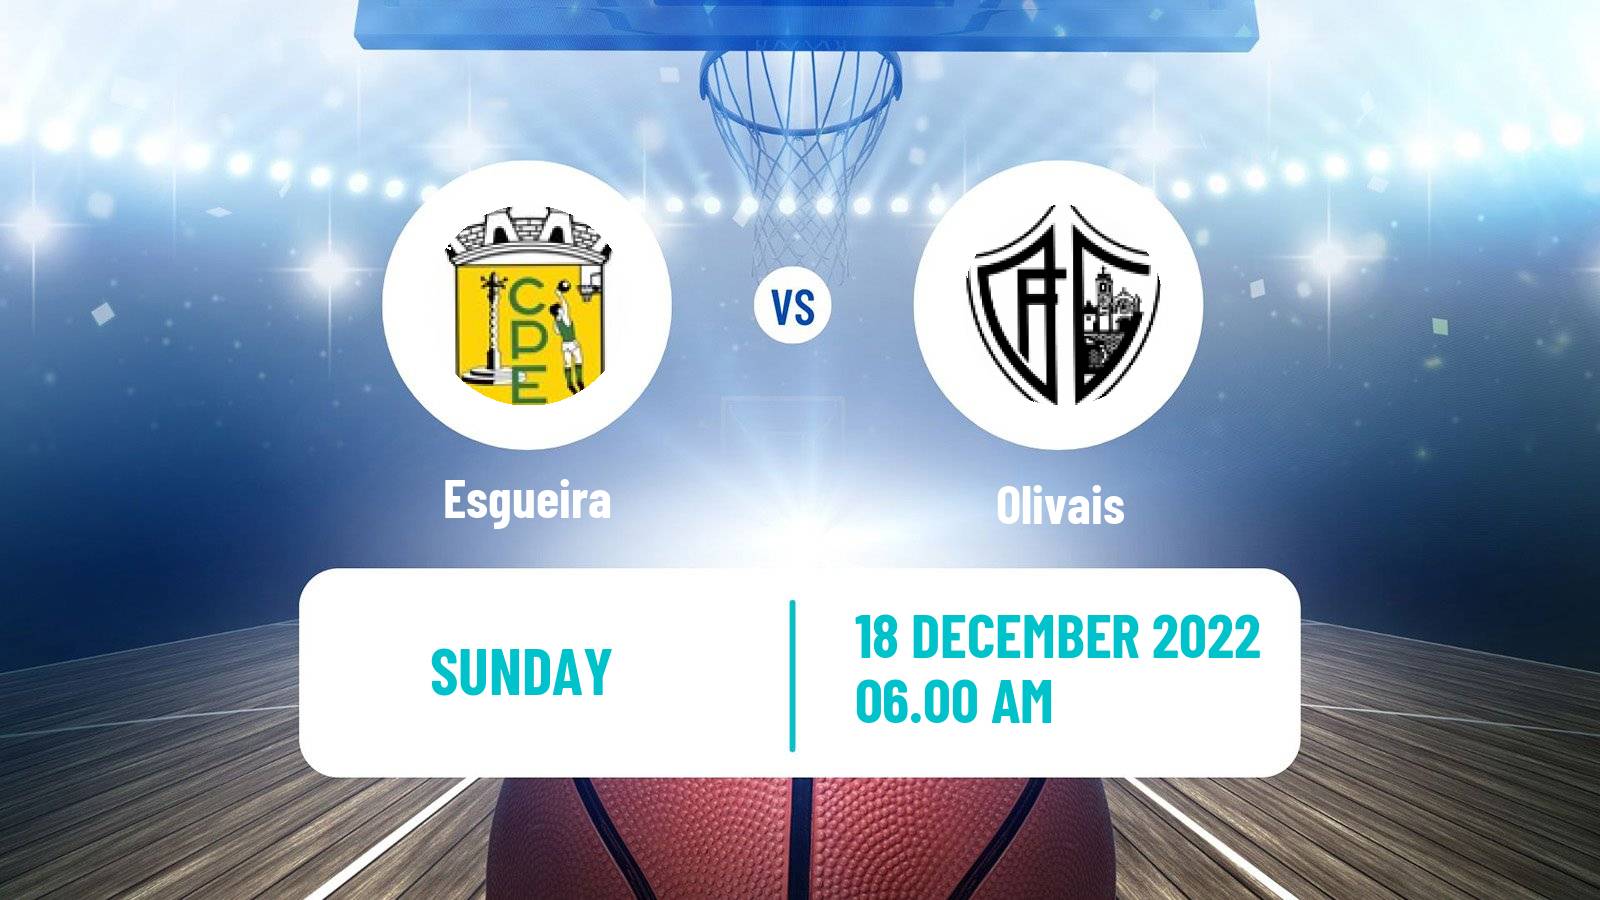 Basketball Portuguese LFB Esgueira - Olivais